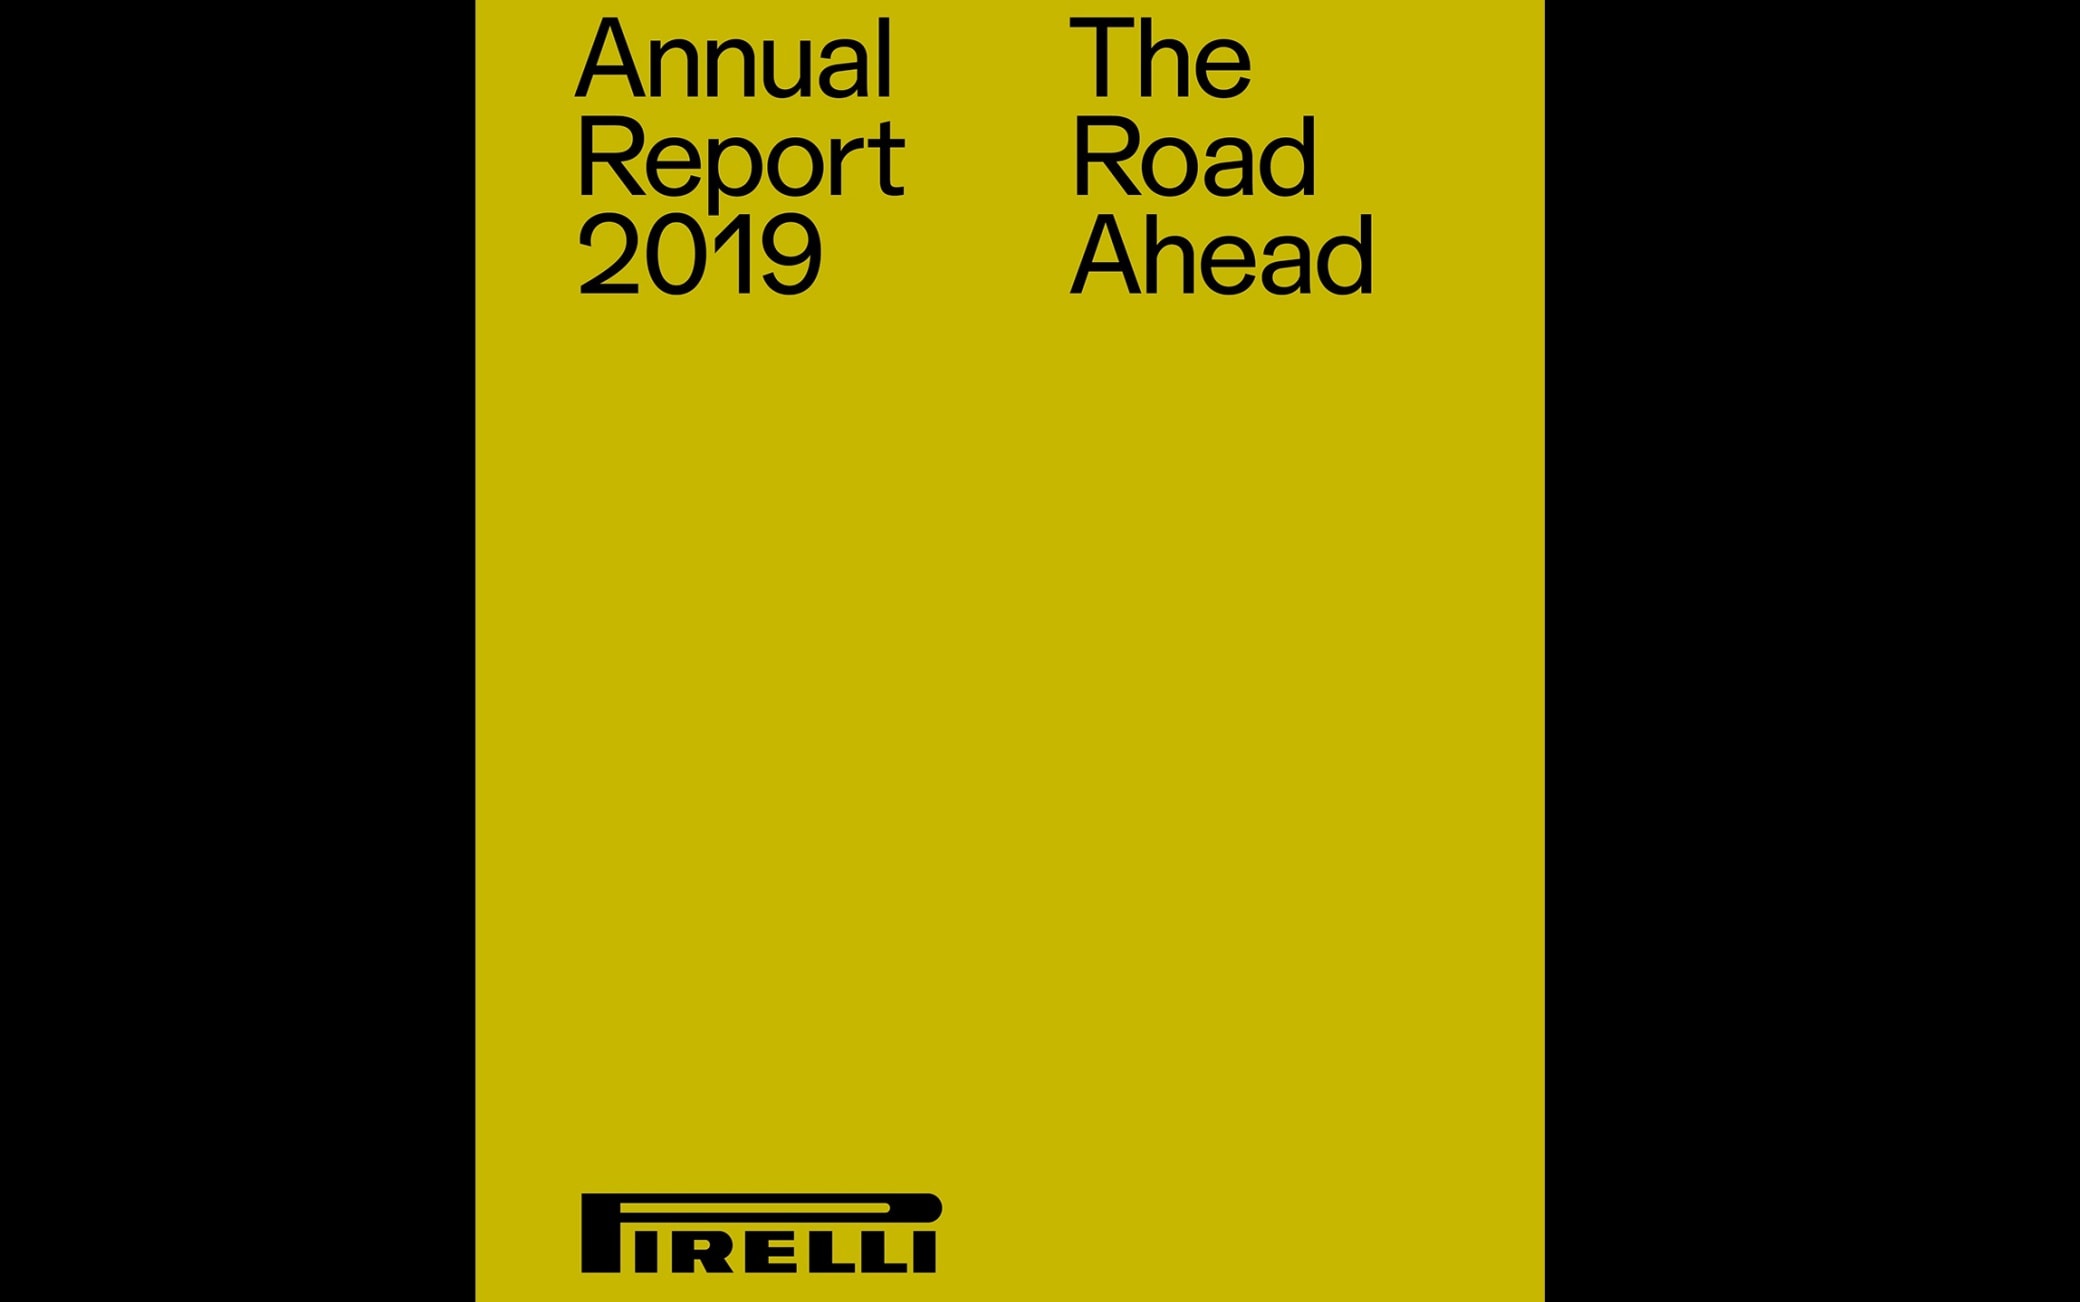 pirelli annual report